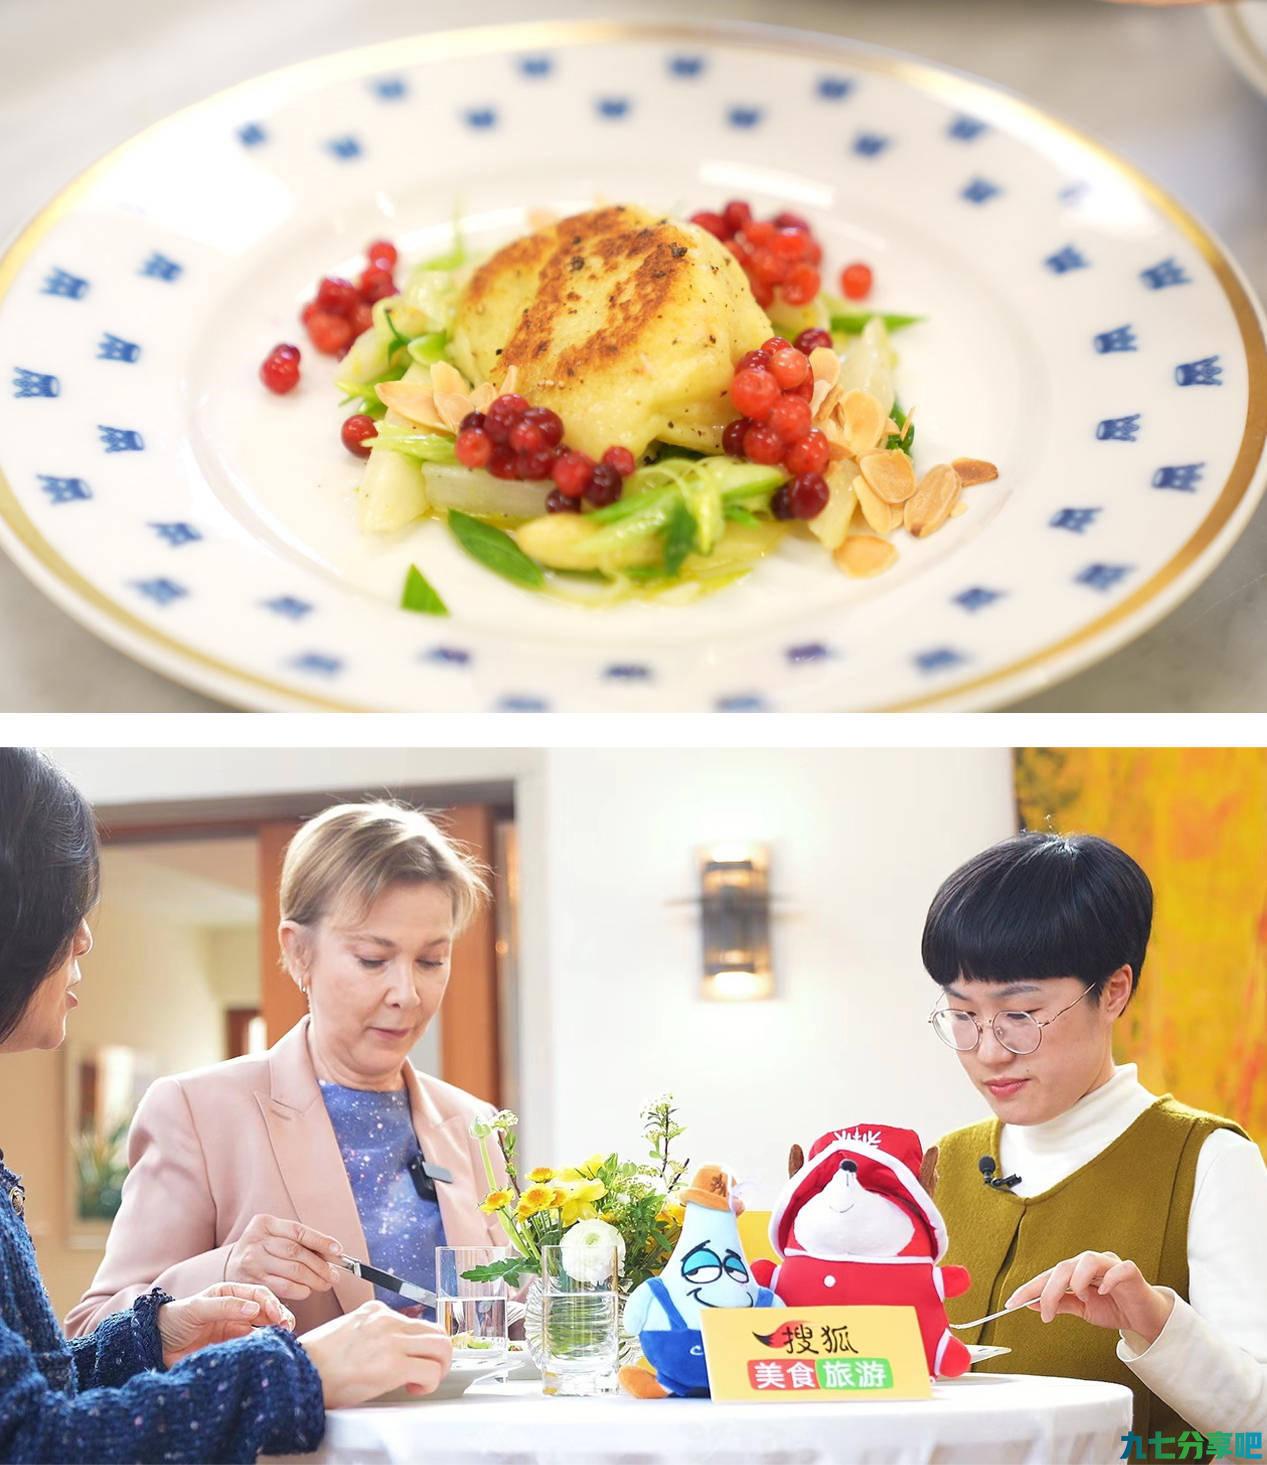 搜狐美食全新直播档《大使的美食会客厅》开播，首期展示瑞典美食